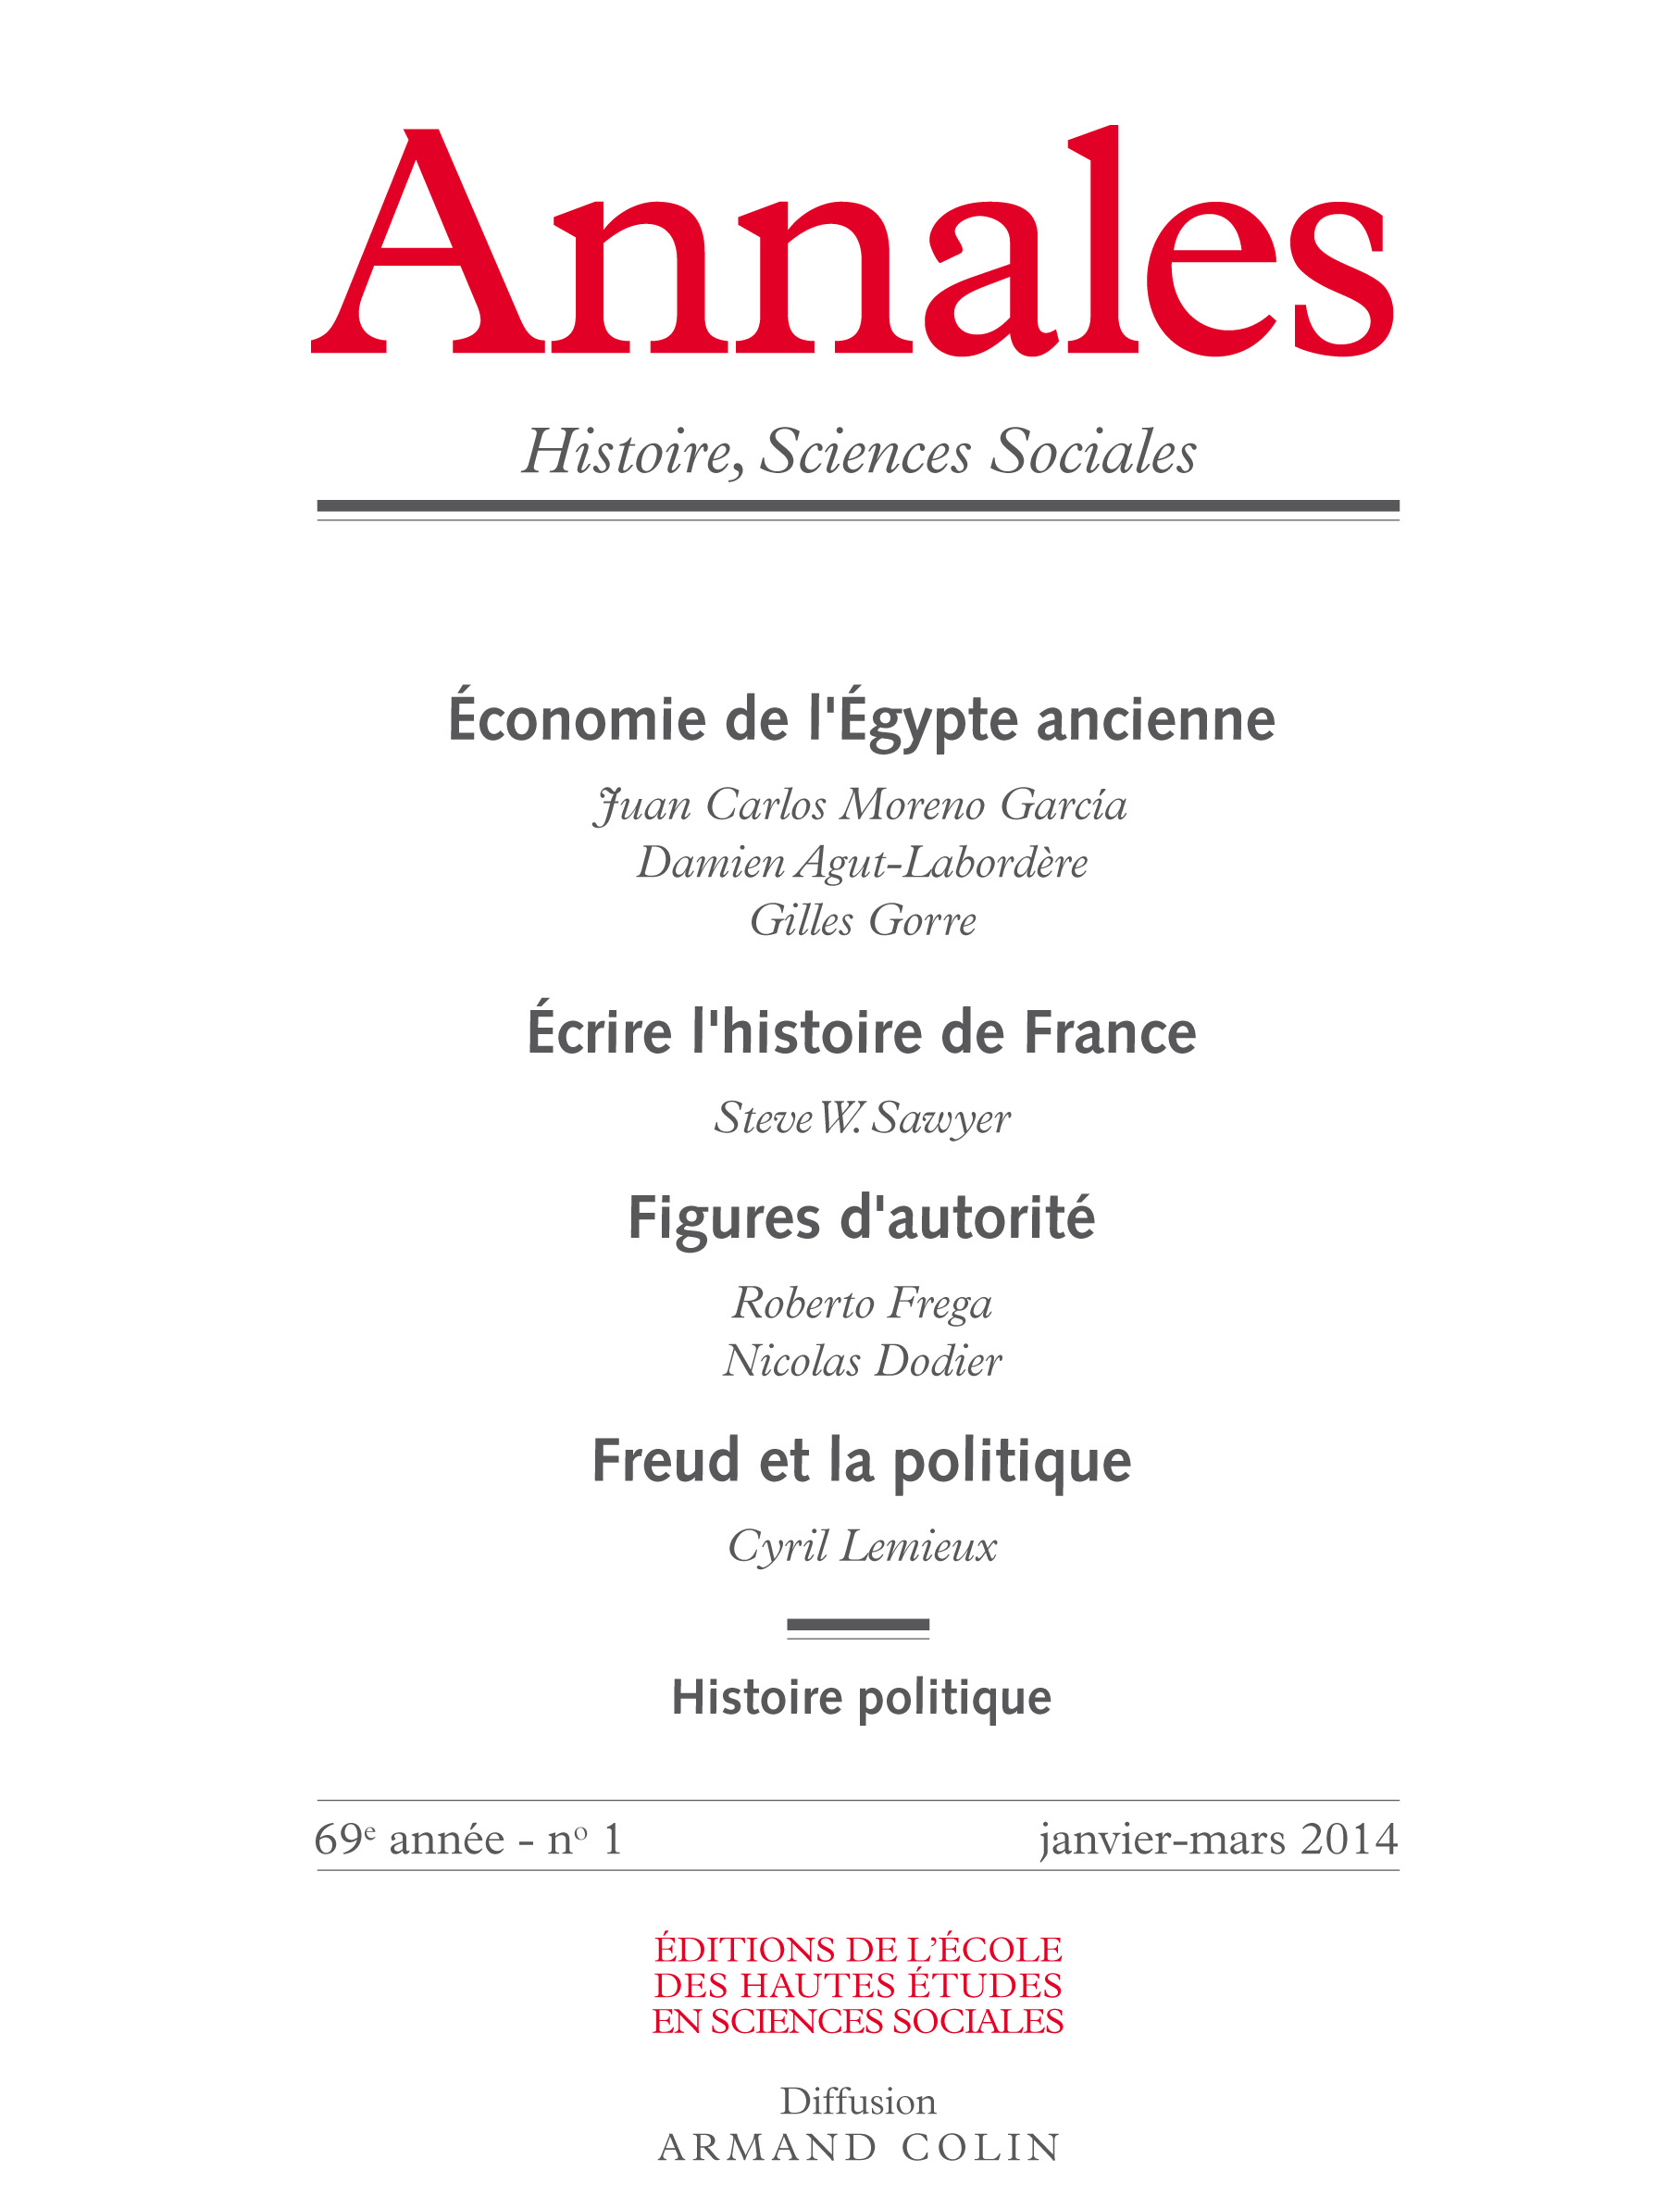 2014/1 - Économie de l’Égypte ancienne - Écrire l’histoire de France - Figures d'autorité - Freud et la politique